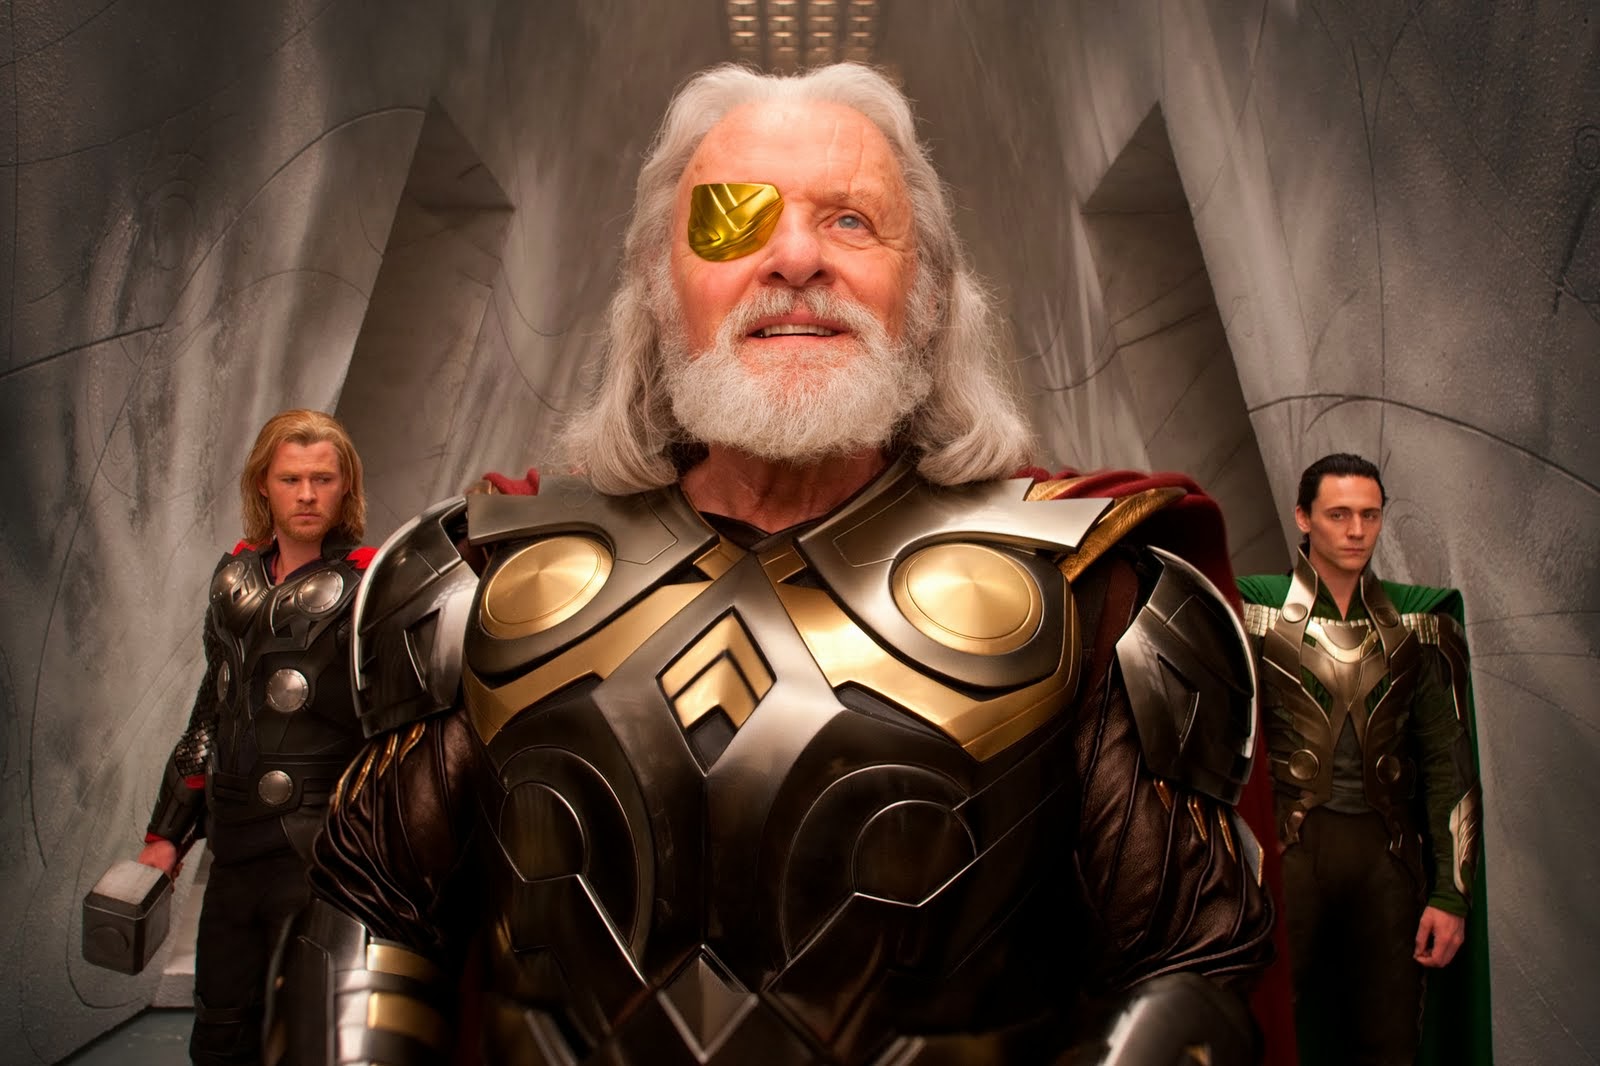 The Norse Mythology Blog Norsemyth Org The Thor Movies And Norse Mythology